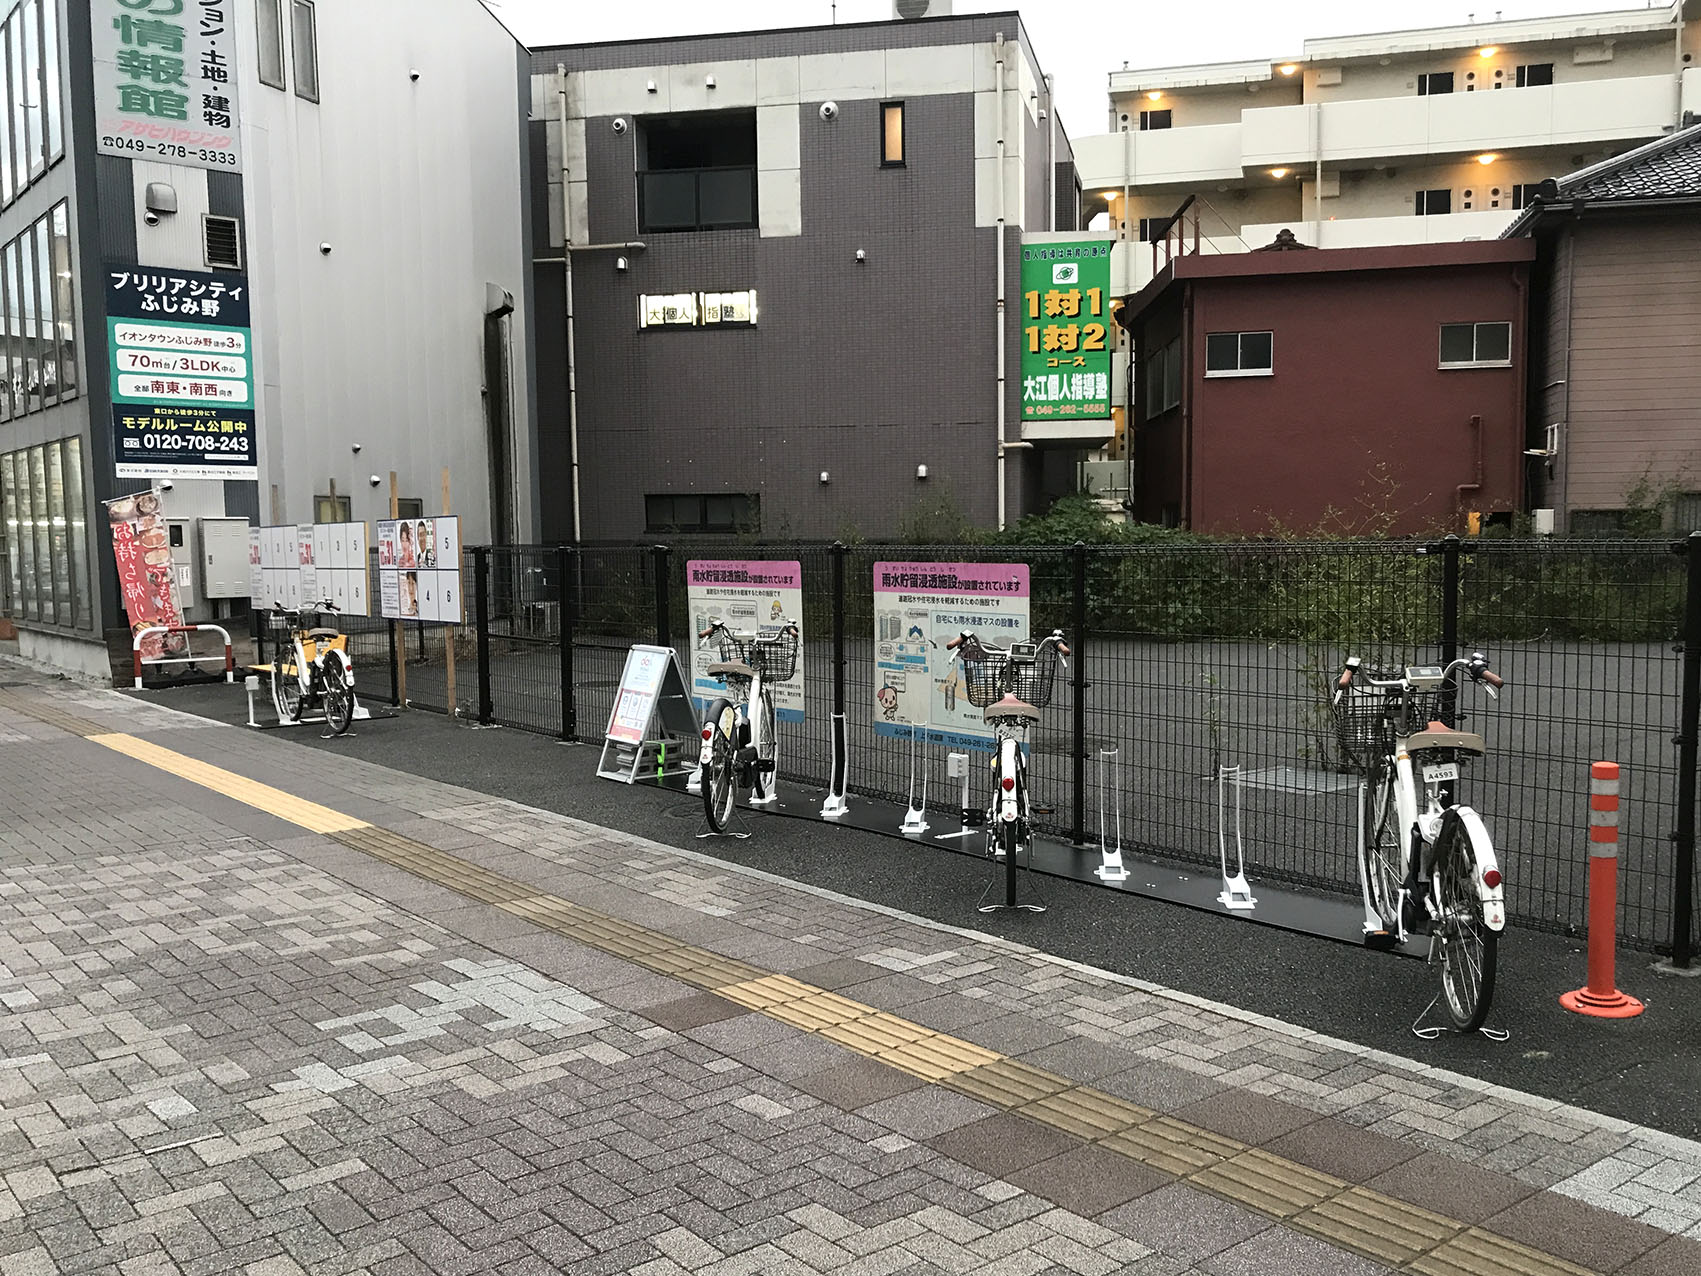 ふじみ野市駅周辺のレンタサイクル(自転車)・シェアサイクルポートを 